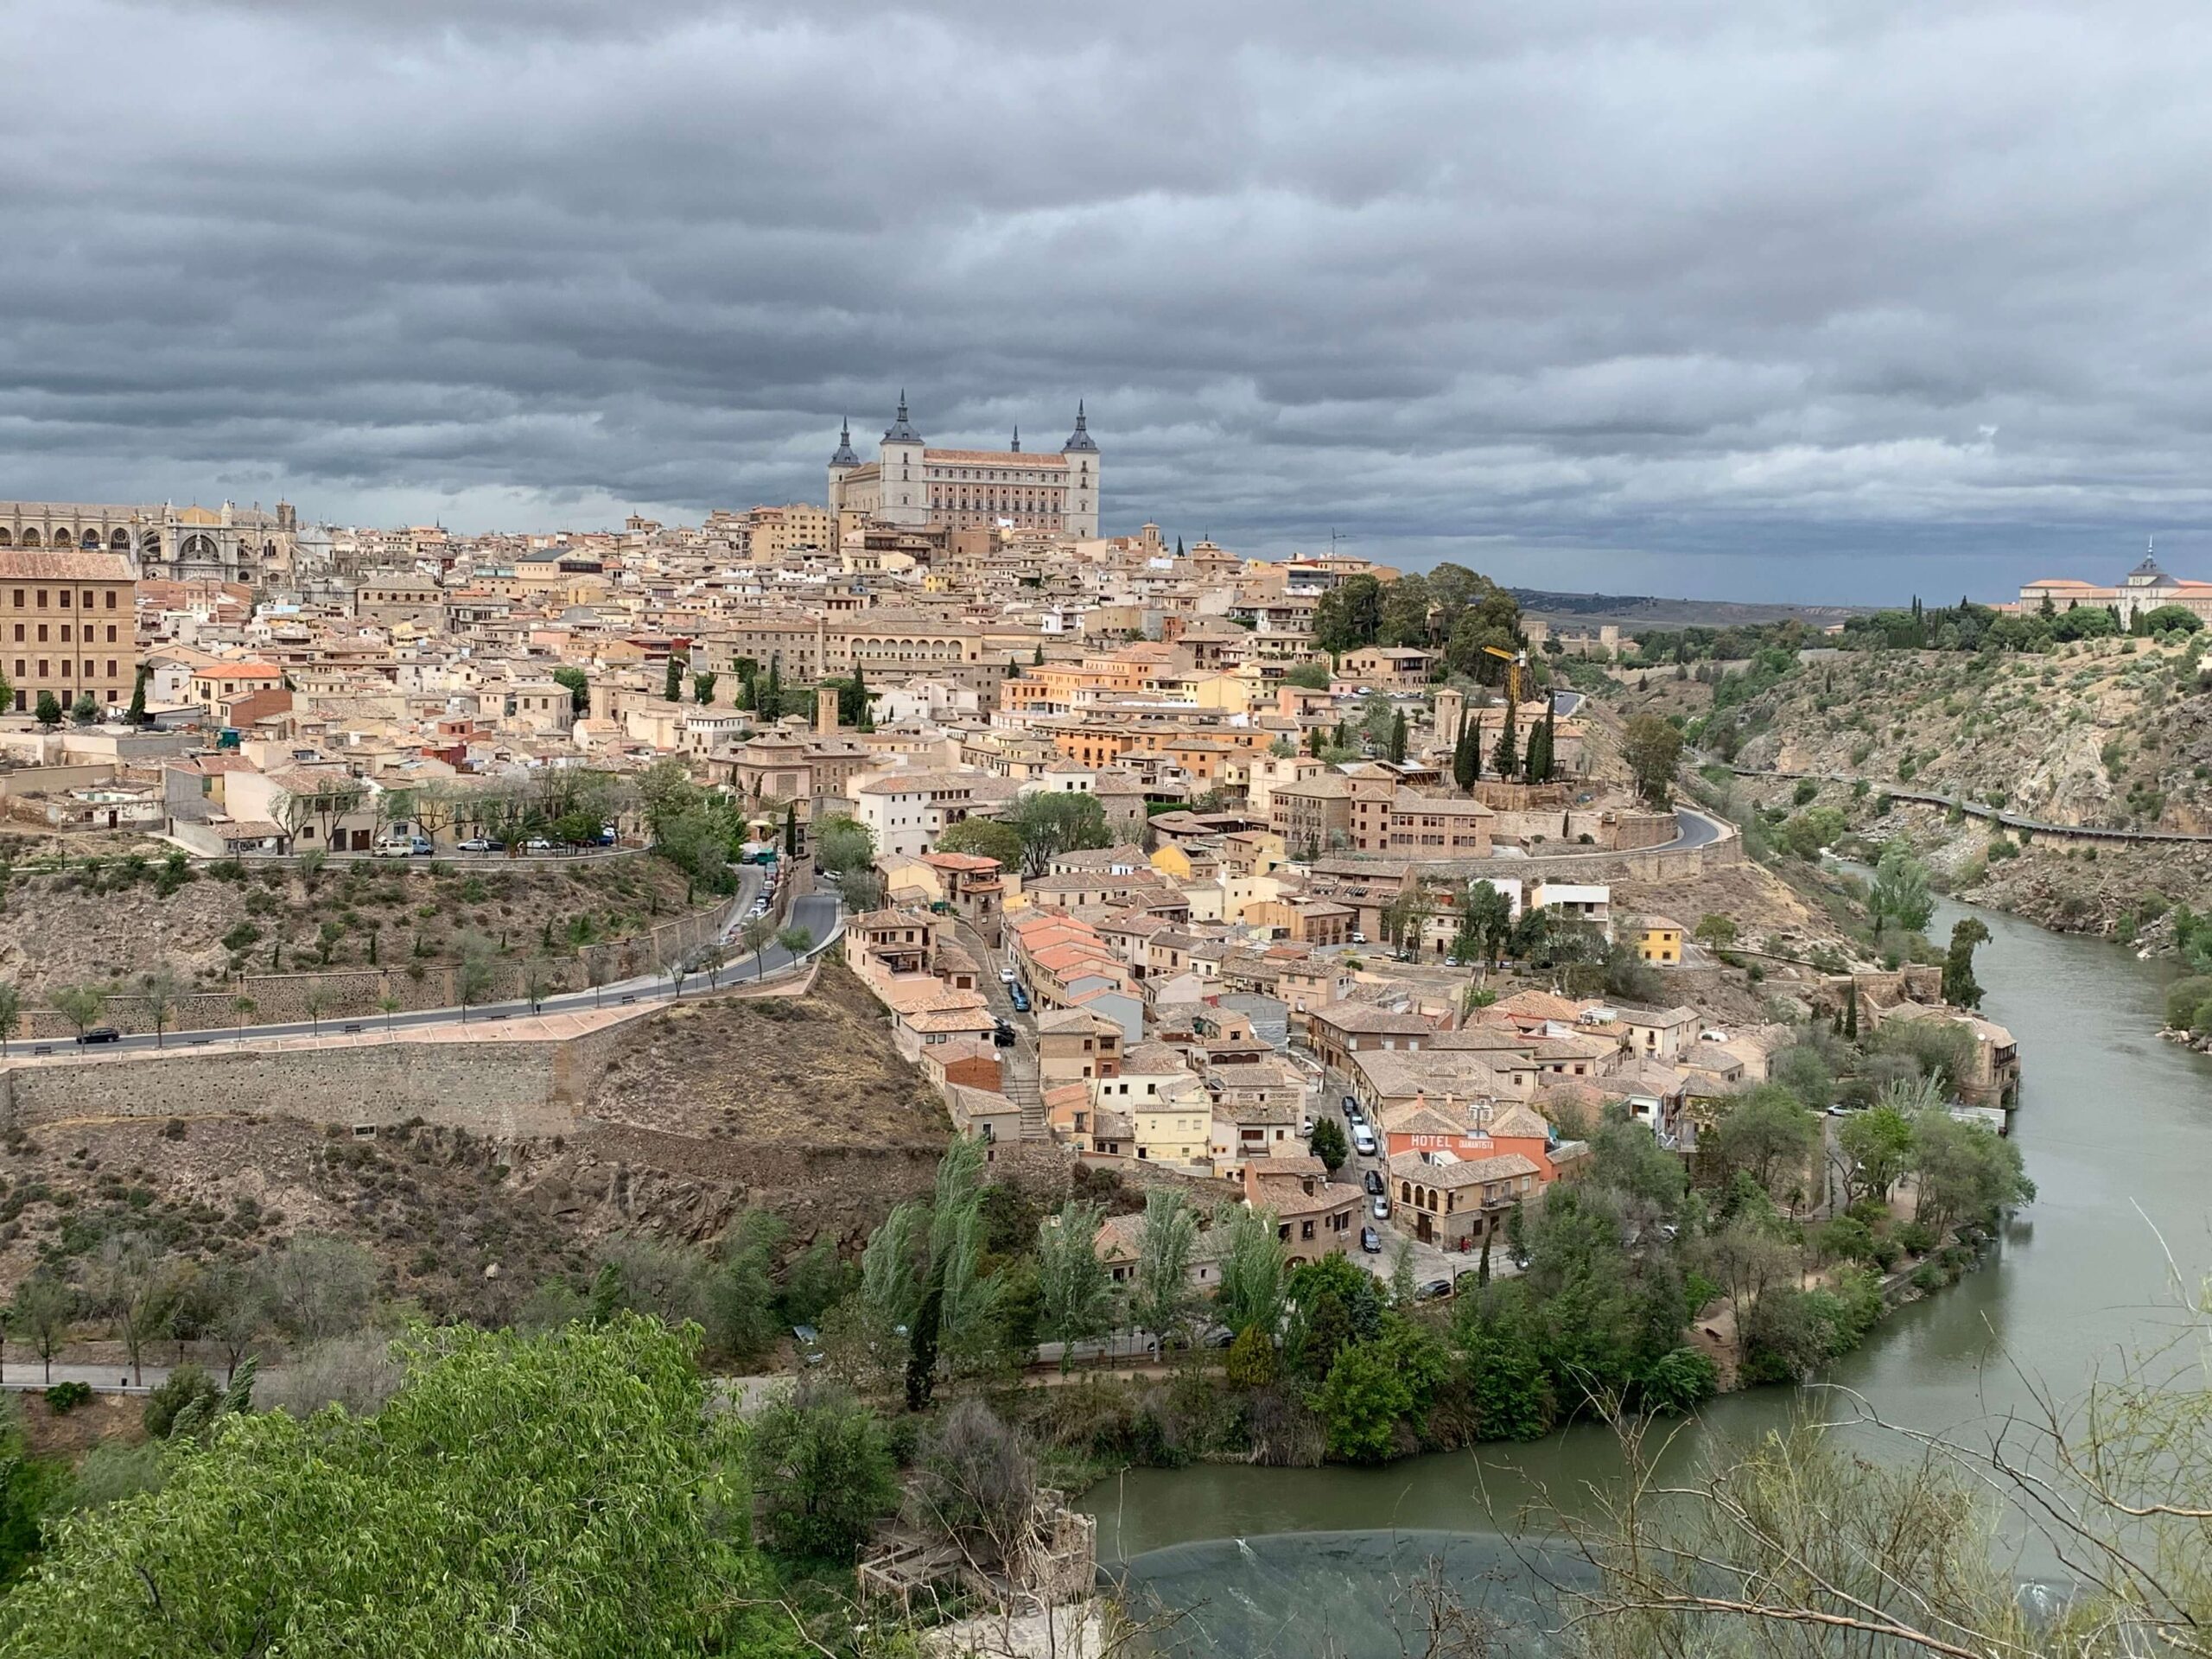 Land of Swords – Toledo, Spain